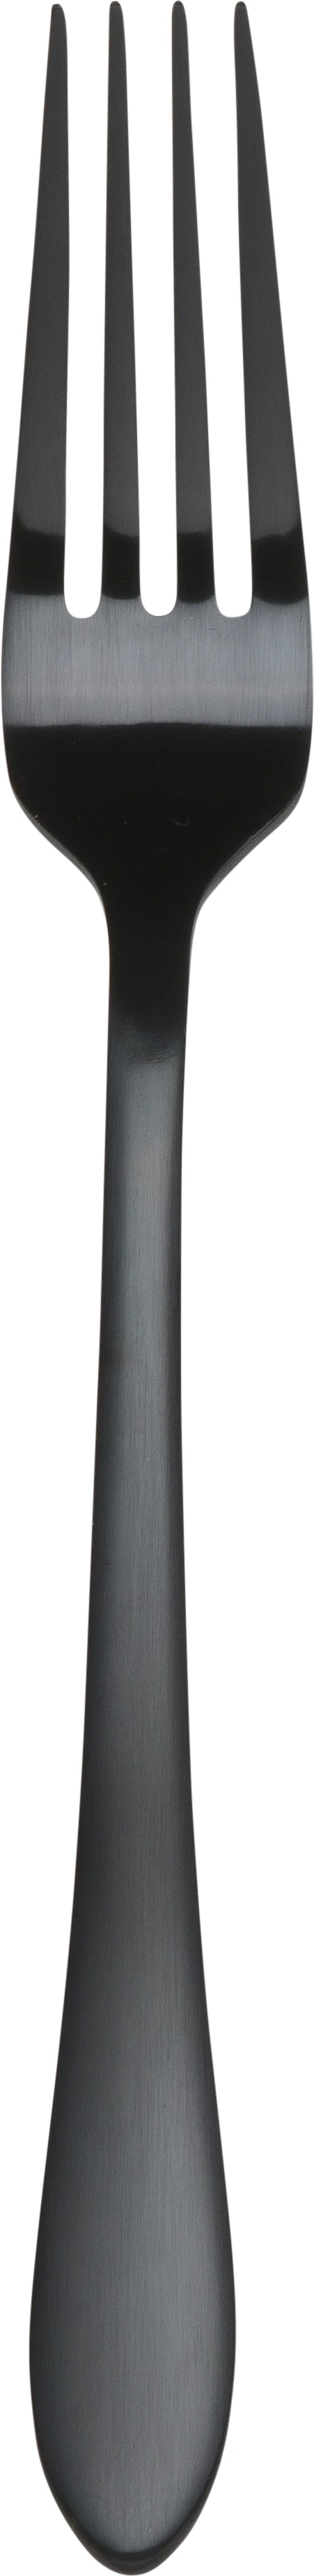 Øland spisegaffel, sort, 20 cm